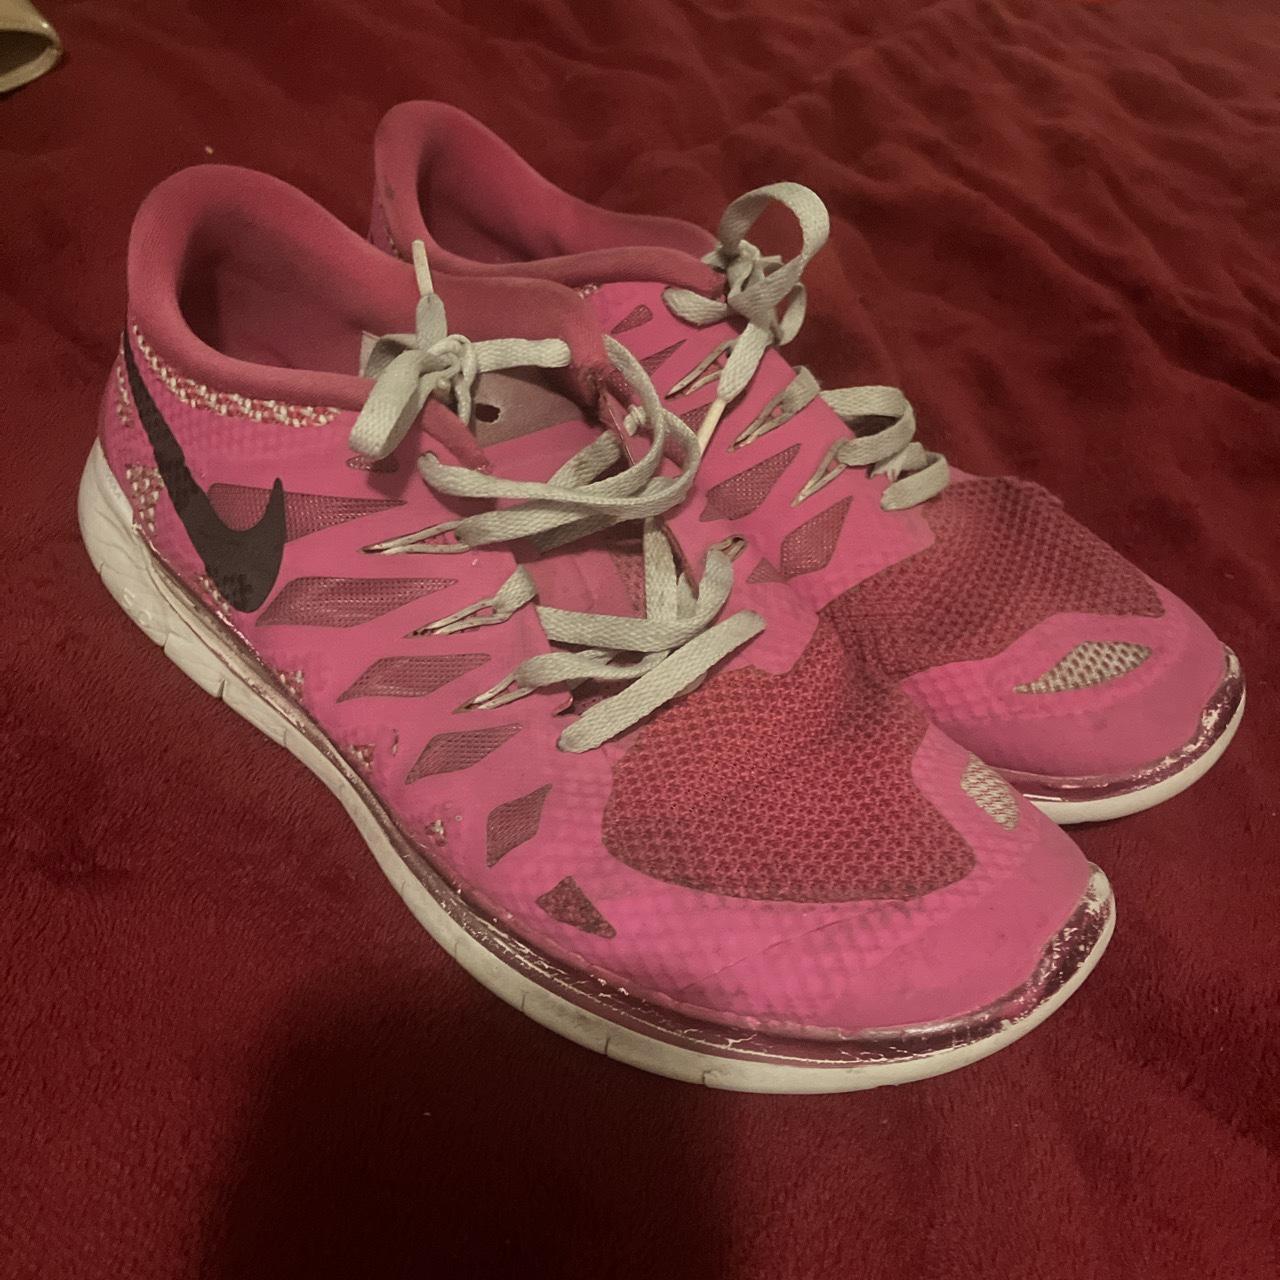 Nike Pink running shoes super comfy! - Depop